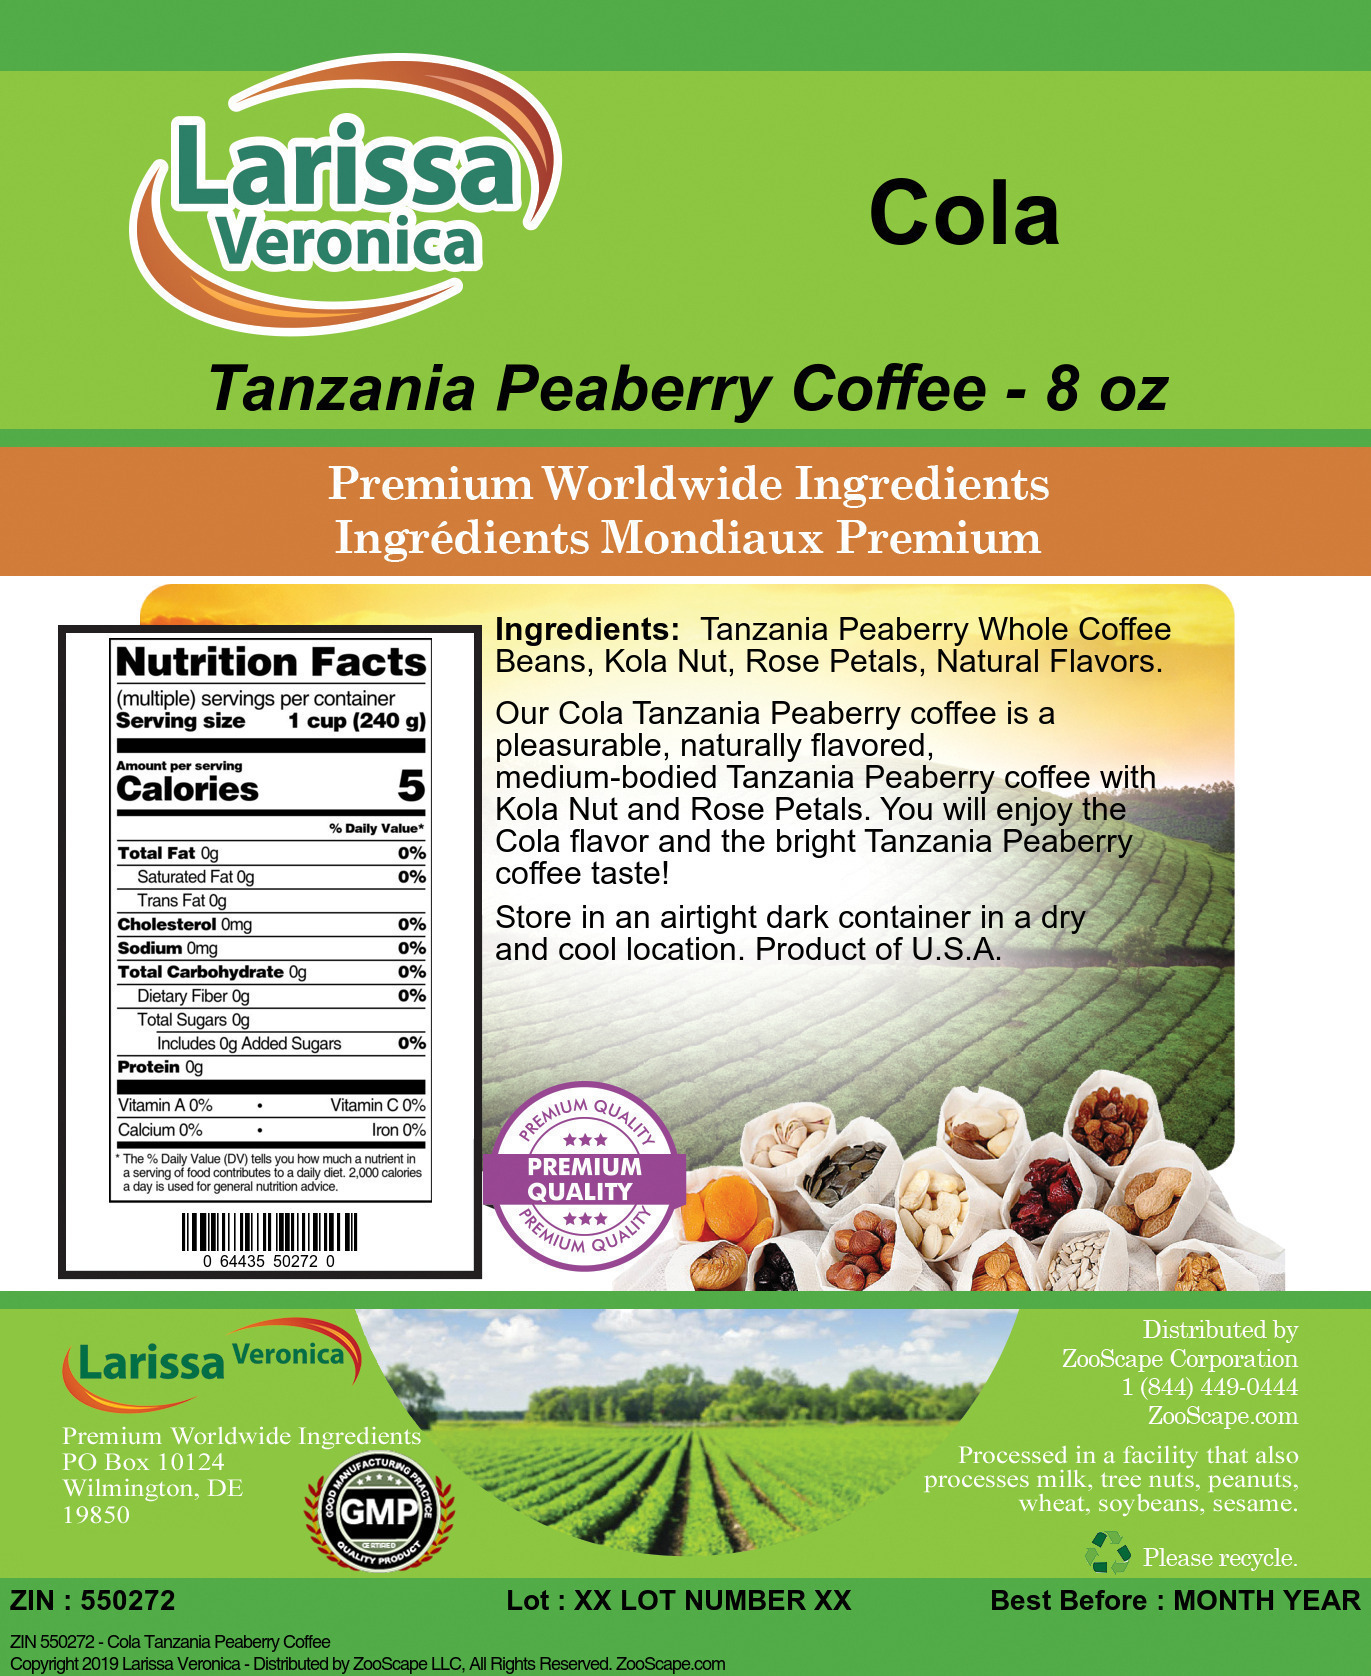 Cola Tanzania Peaberry Coffee - Label